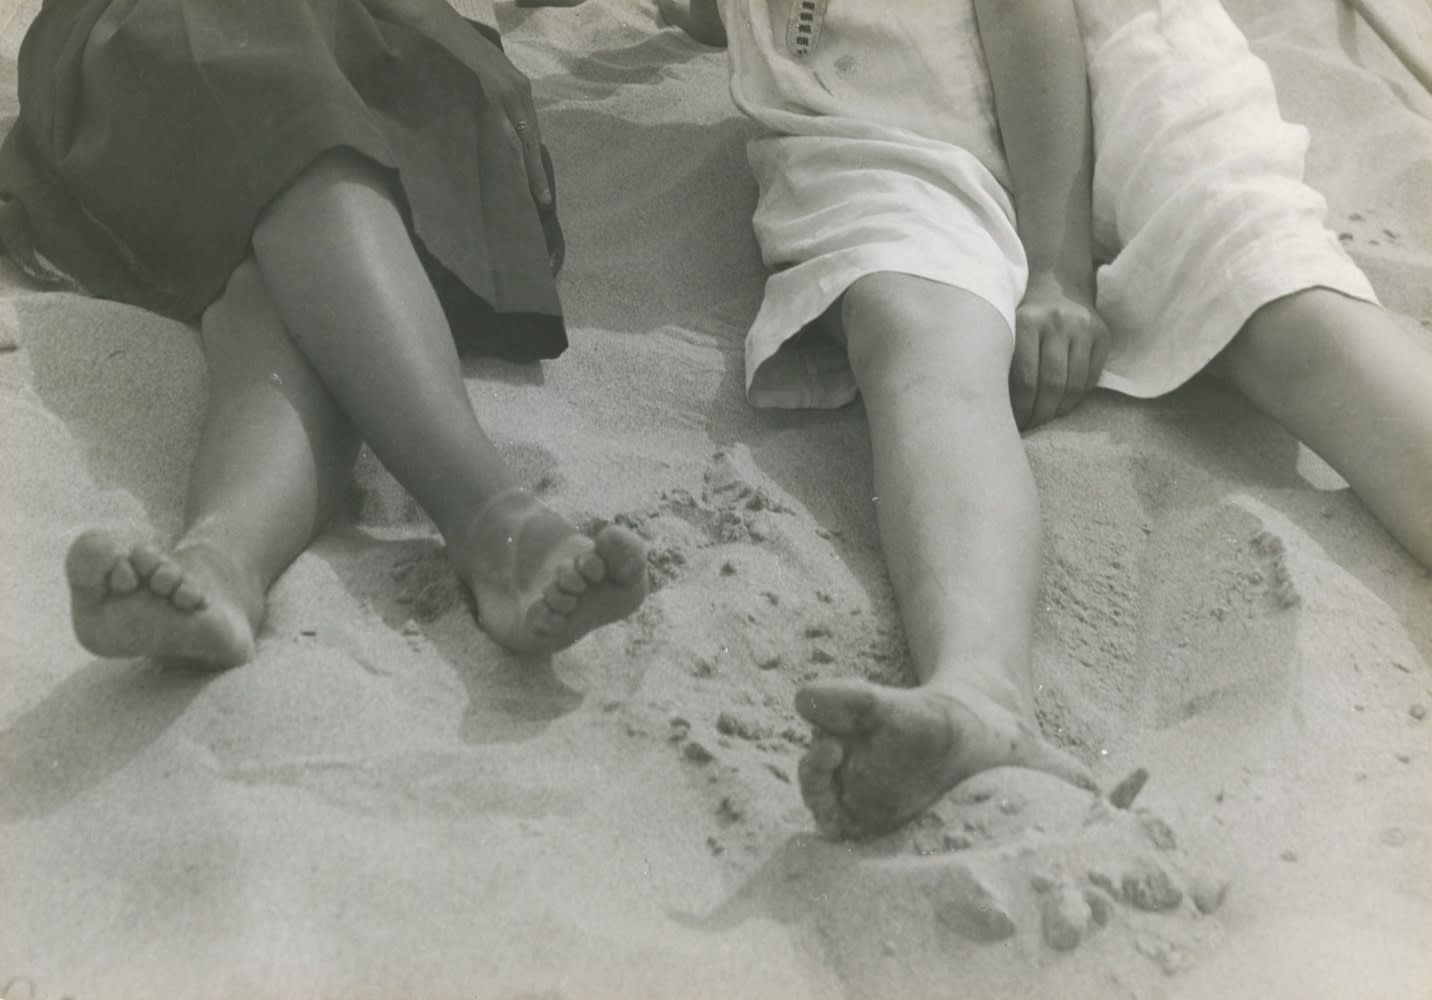 Roger Parry Pieds sur la plage Tirage gélatino-argentique d'époque, contrecollé sur carton 22,6 x 15,9 cm 8.66 x 5.91 in Dim. papier: 23,2 x 16,7 cm